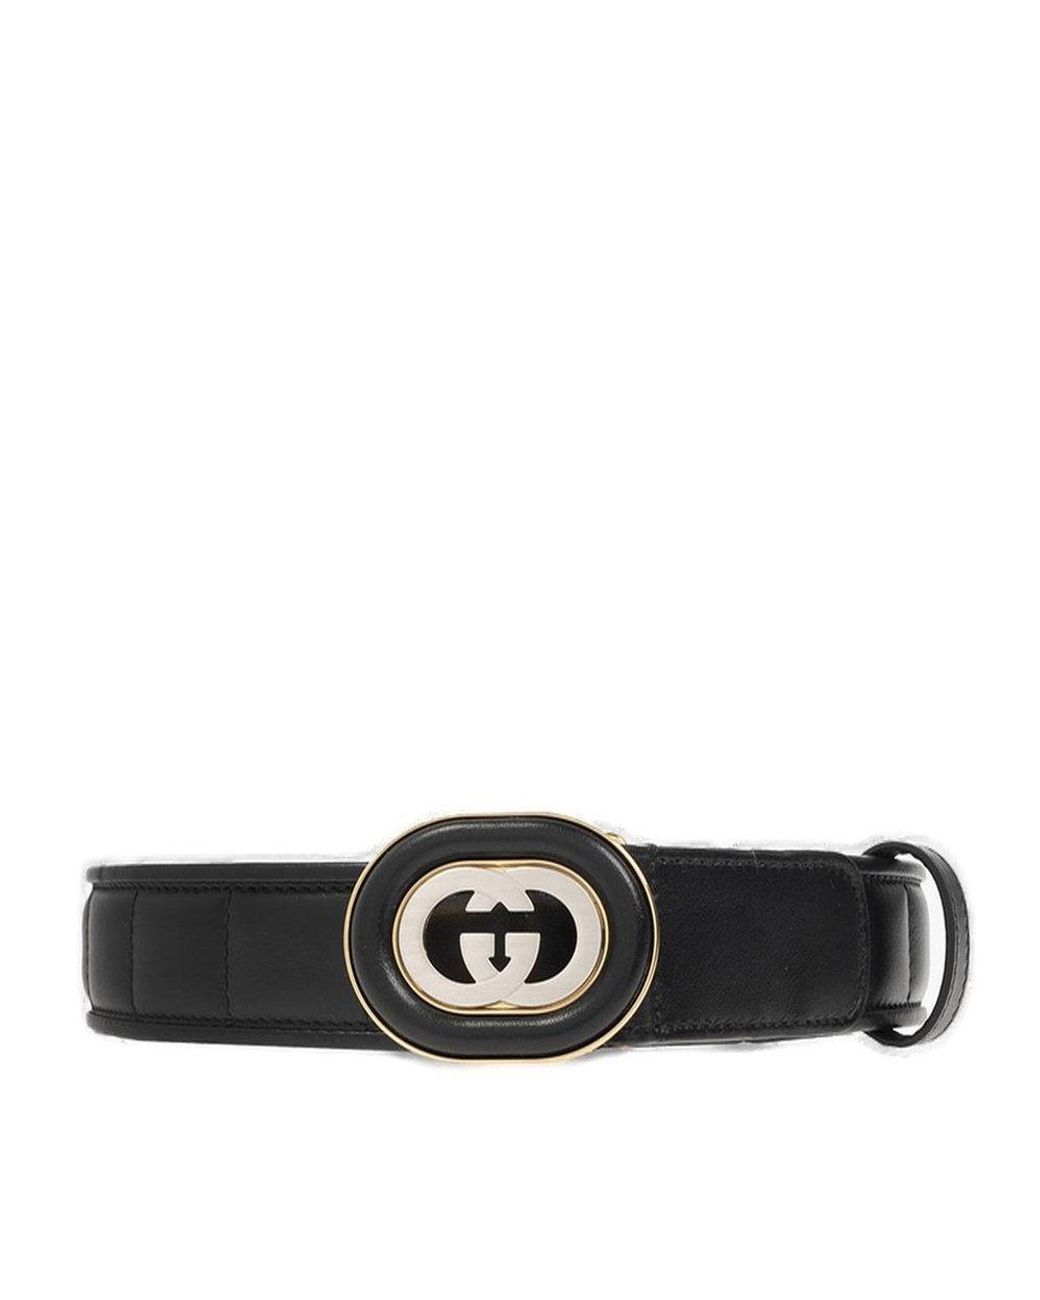 Gucci GG Buckle Belt in Black | Lyst UK